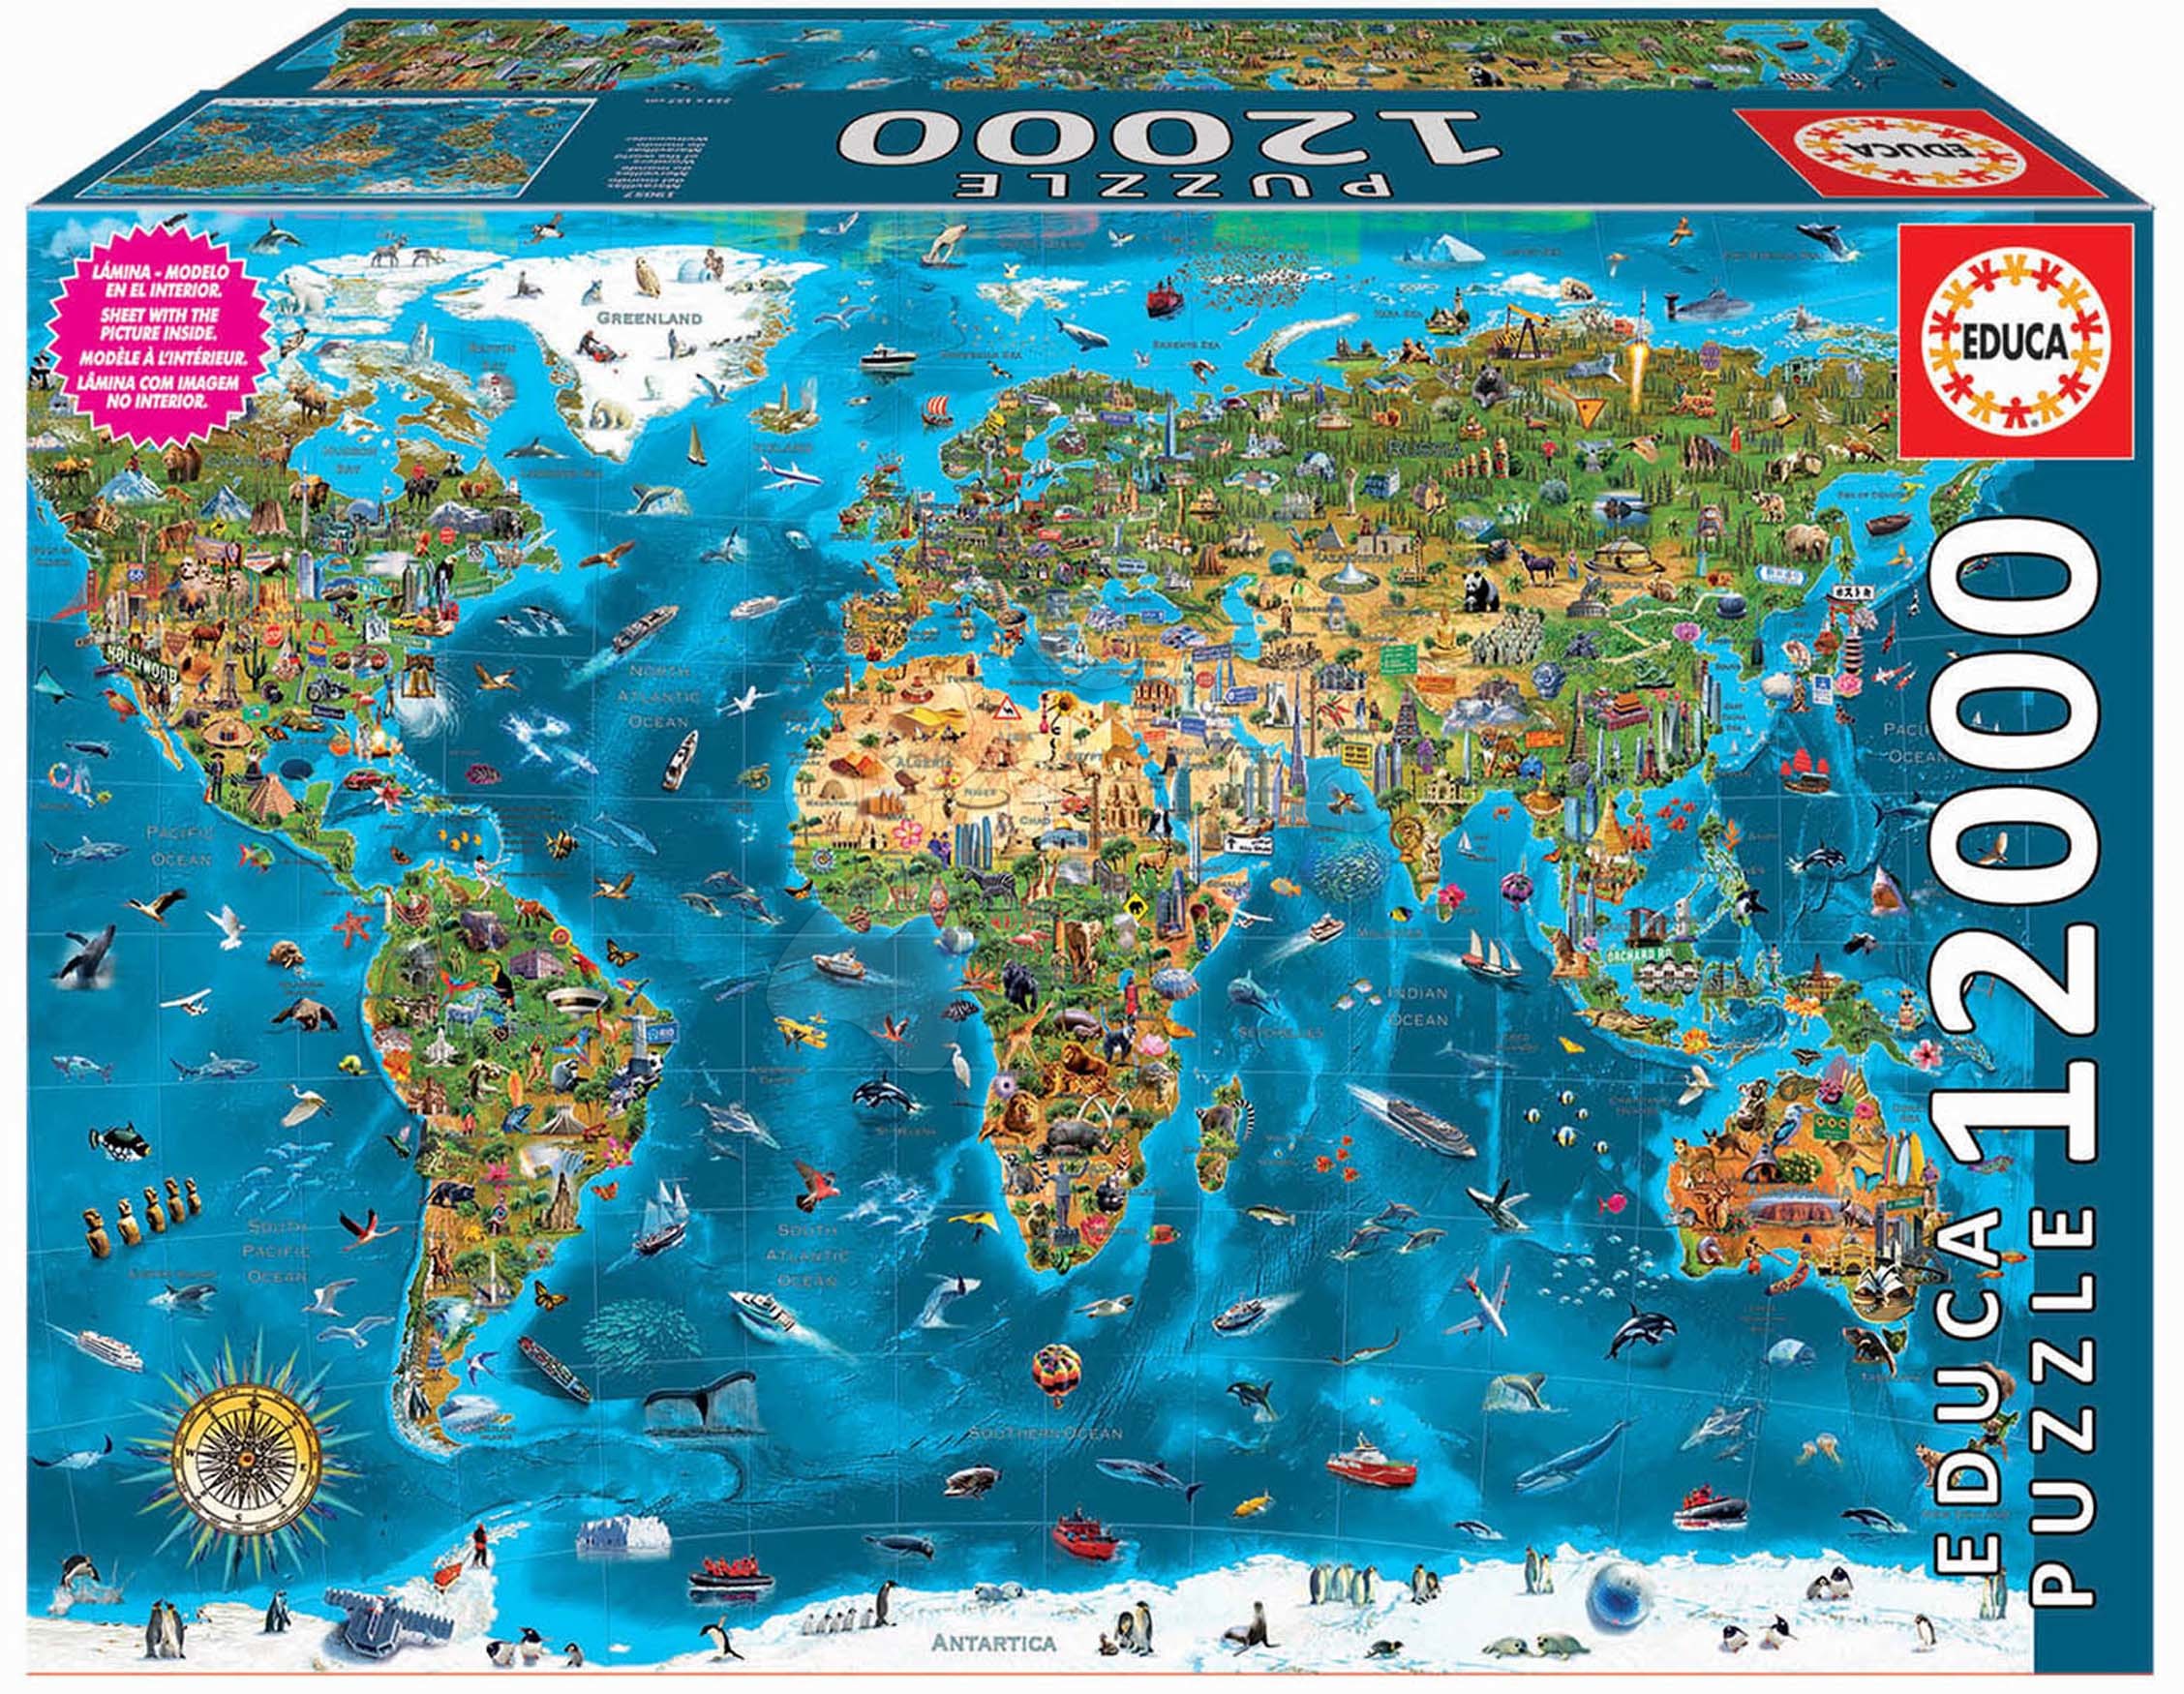 Puzzle 12000 dílků Wonders of the World Educa